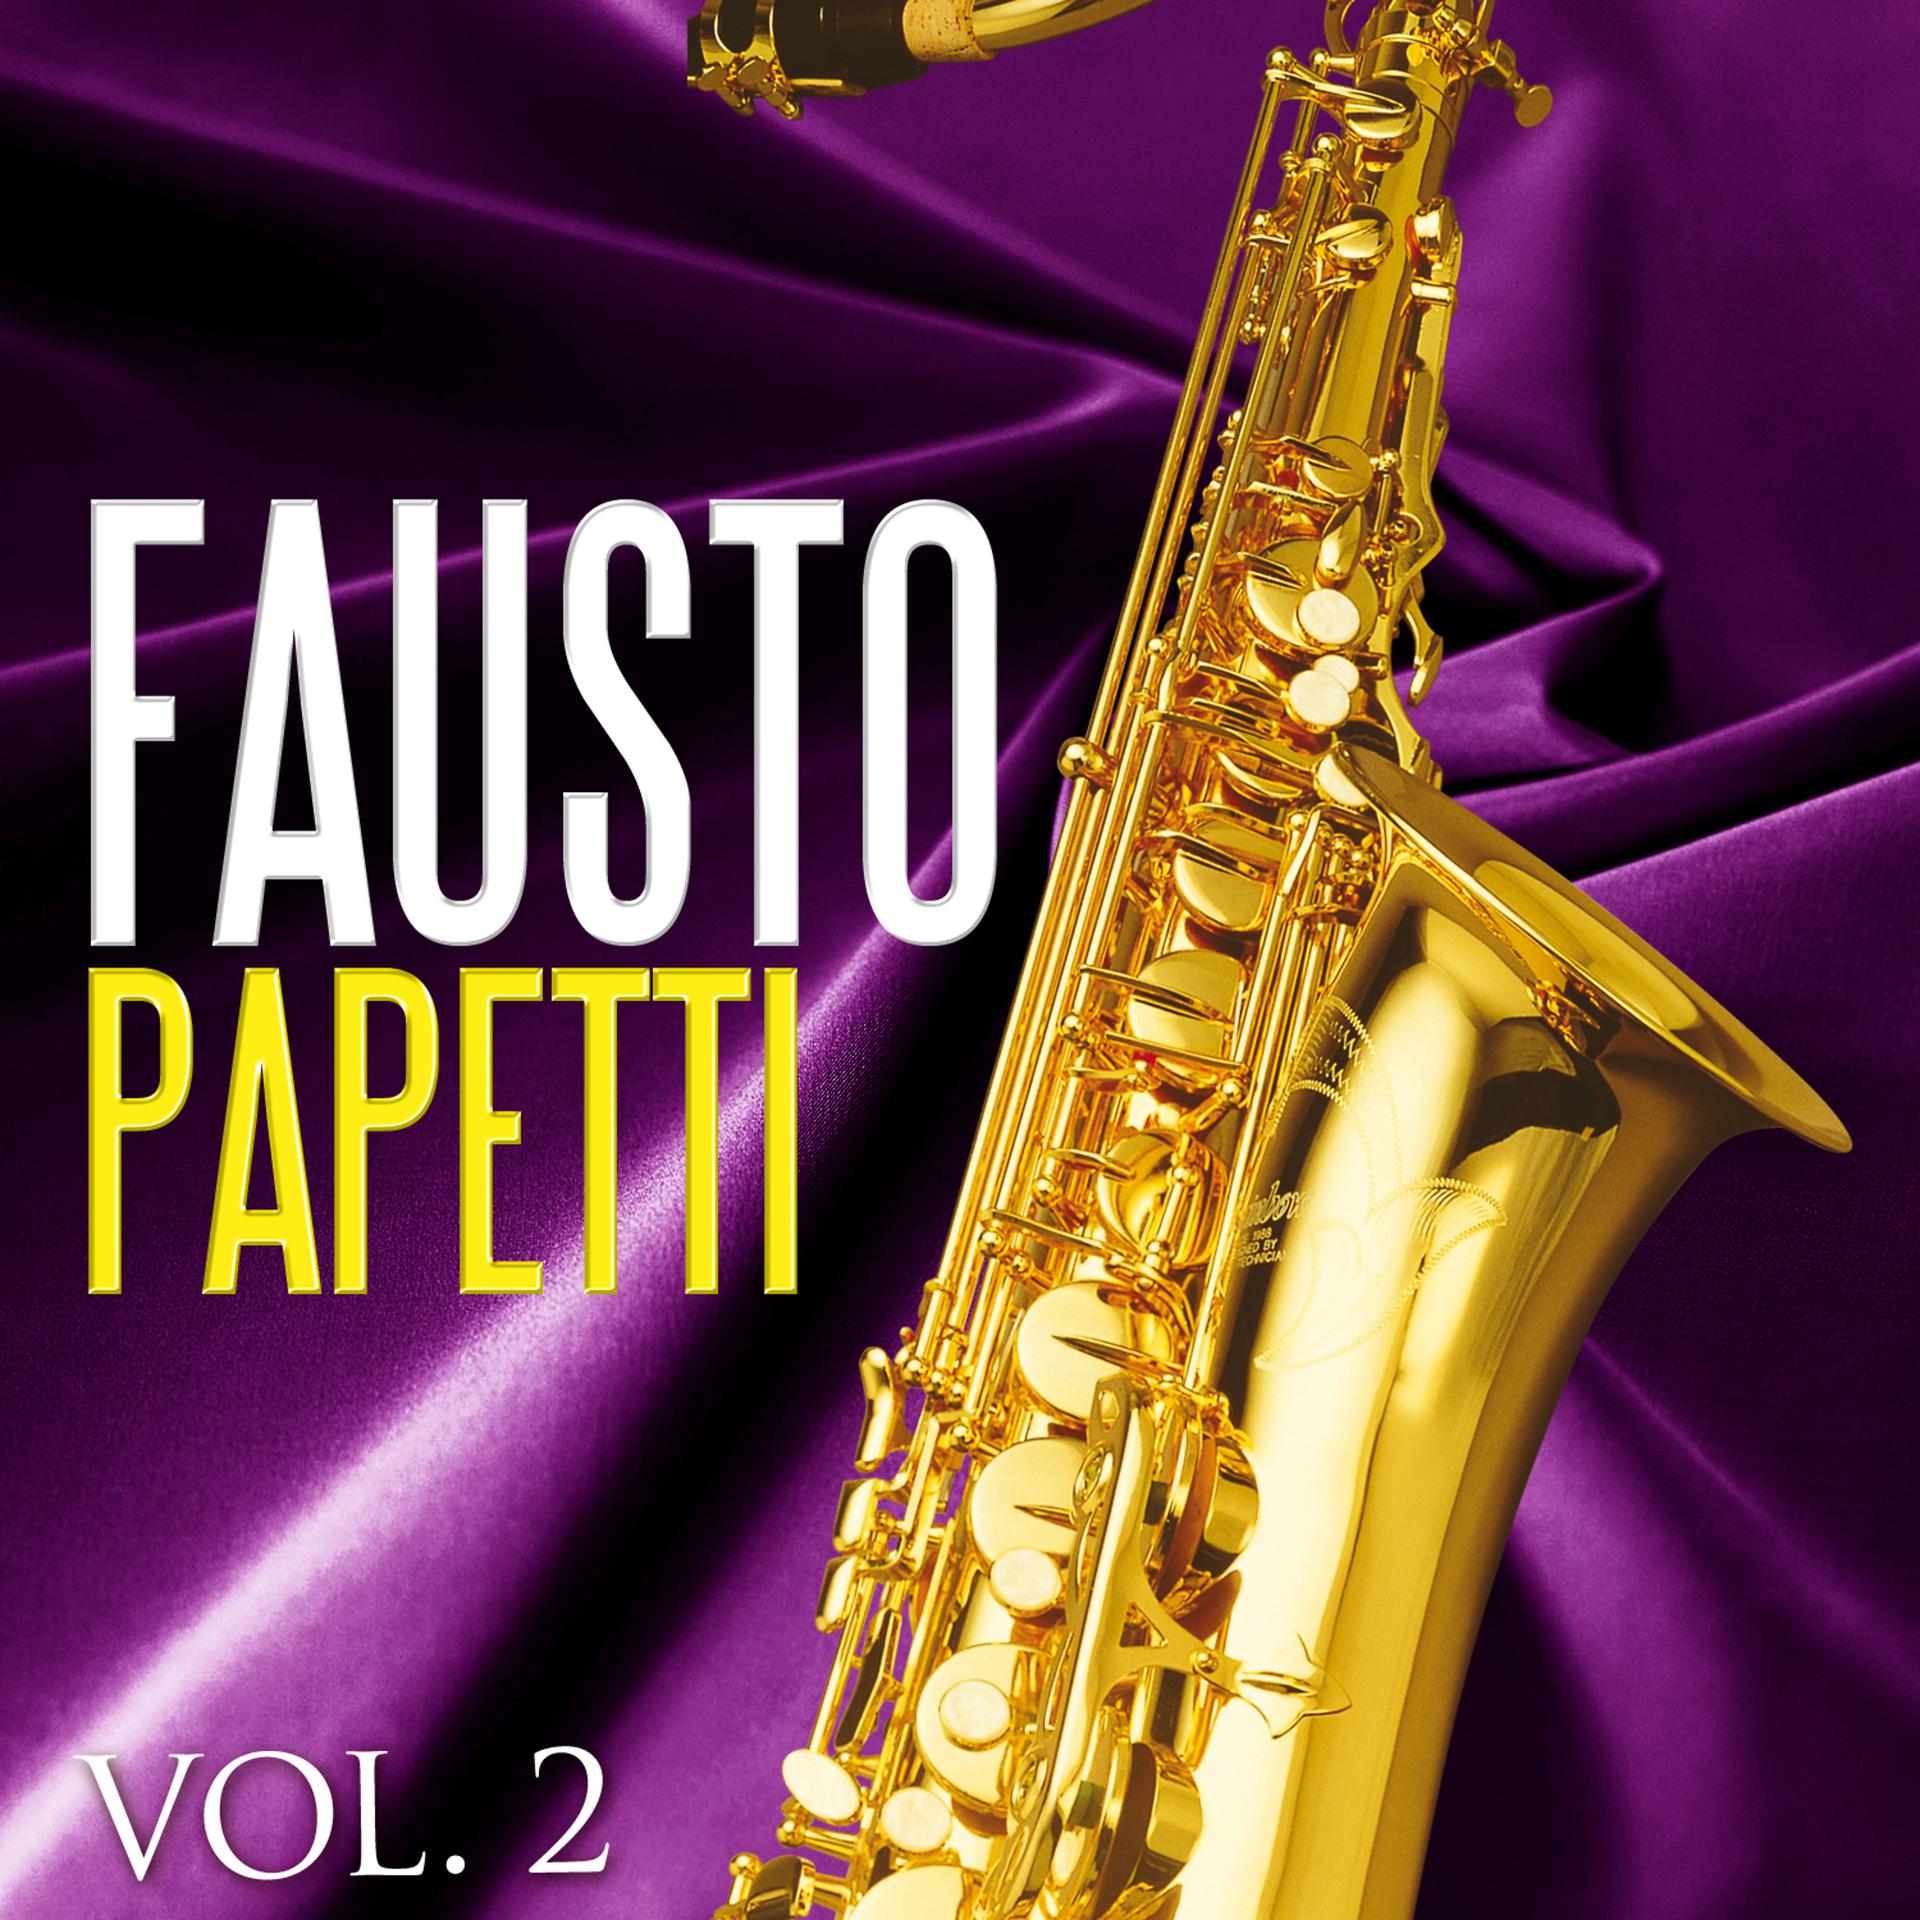 Фаусто папетти. Fausto Papetti обложка. Fausto Papetti обложки альбомов.